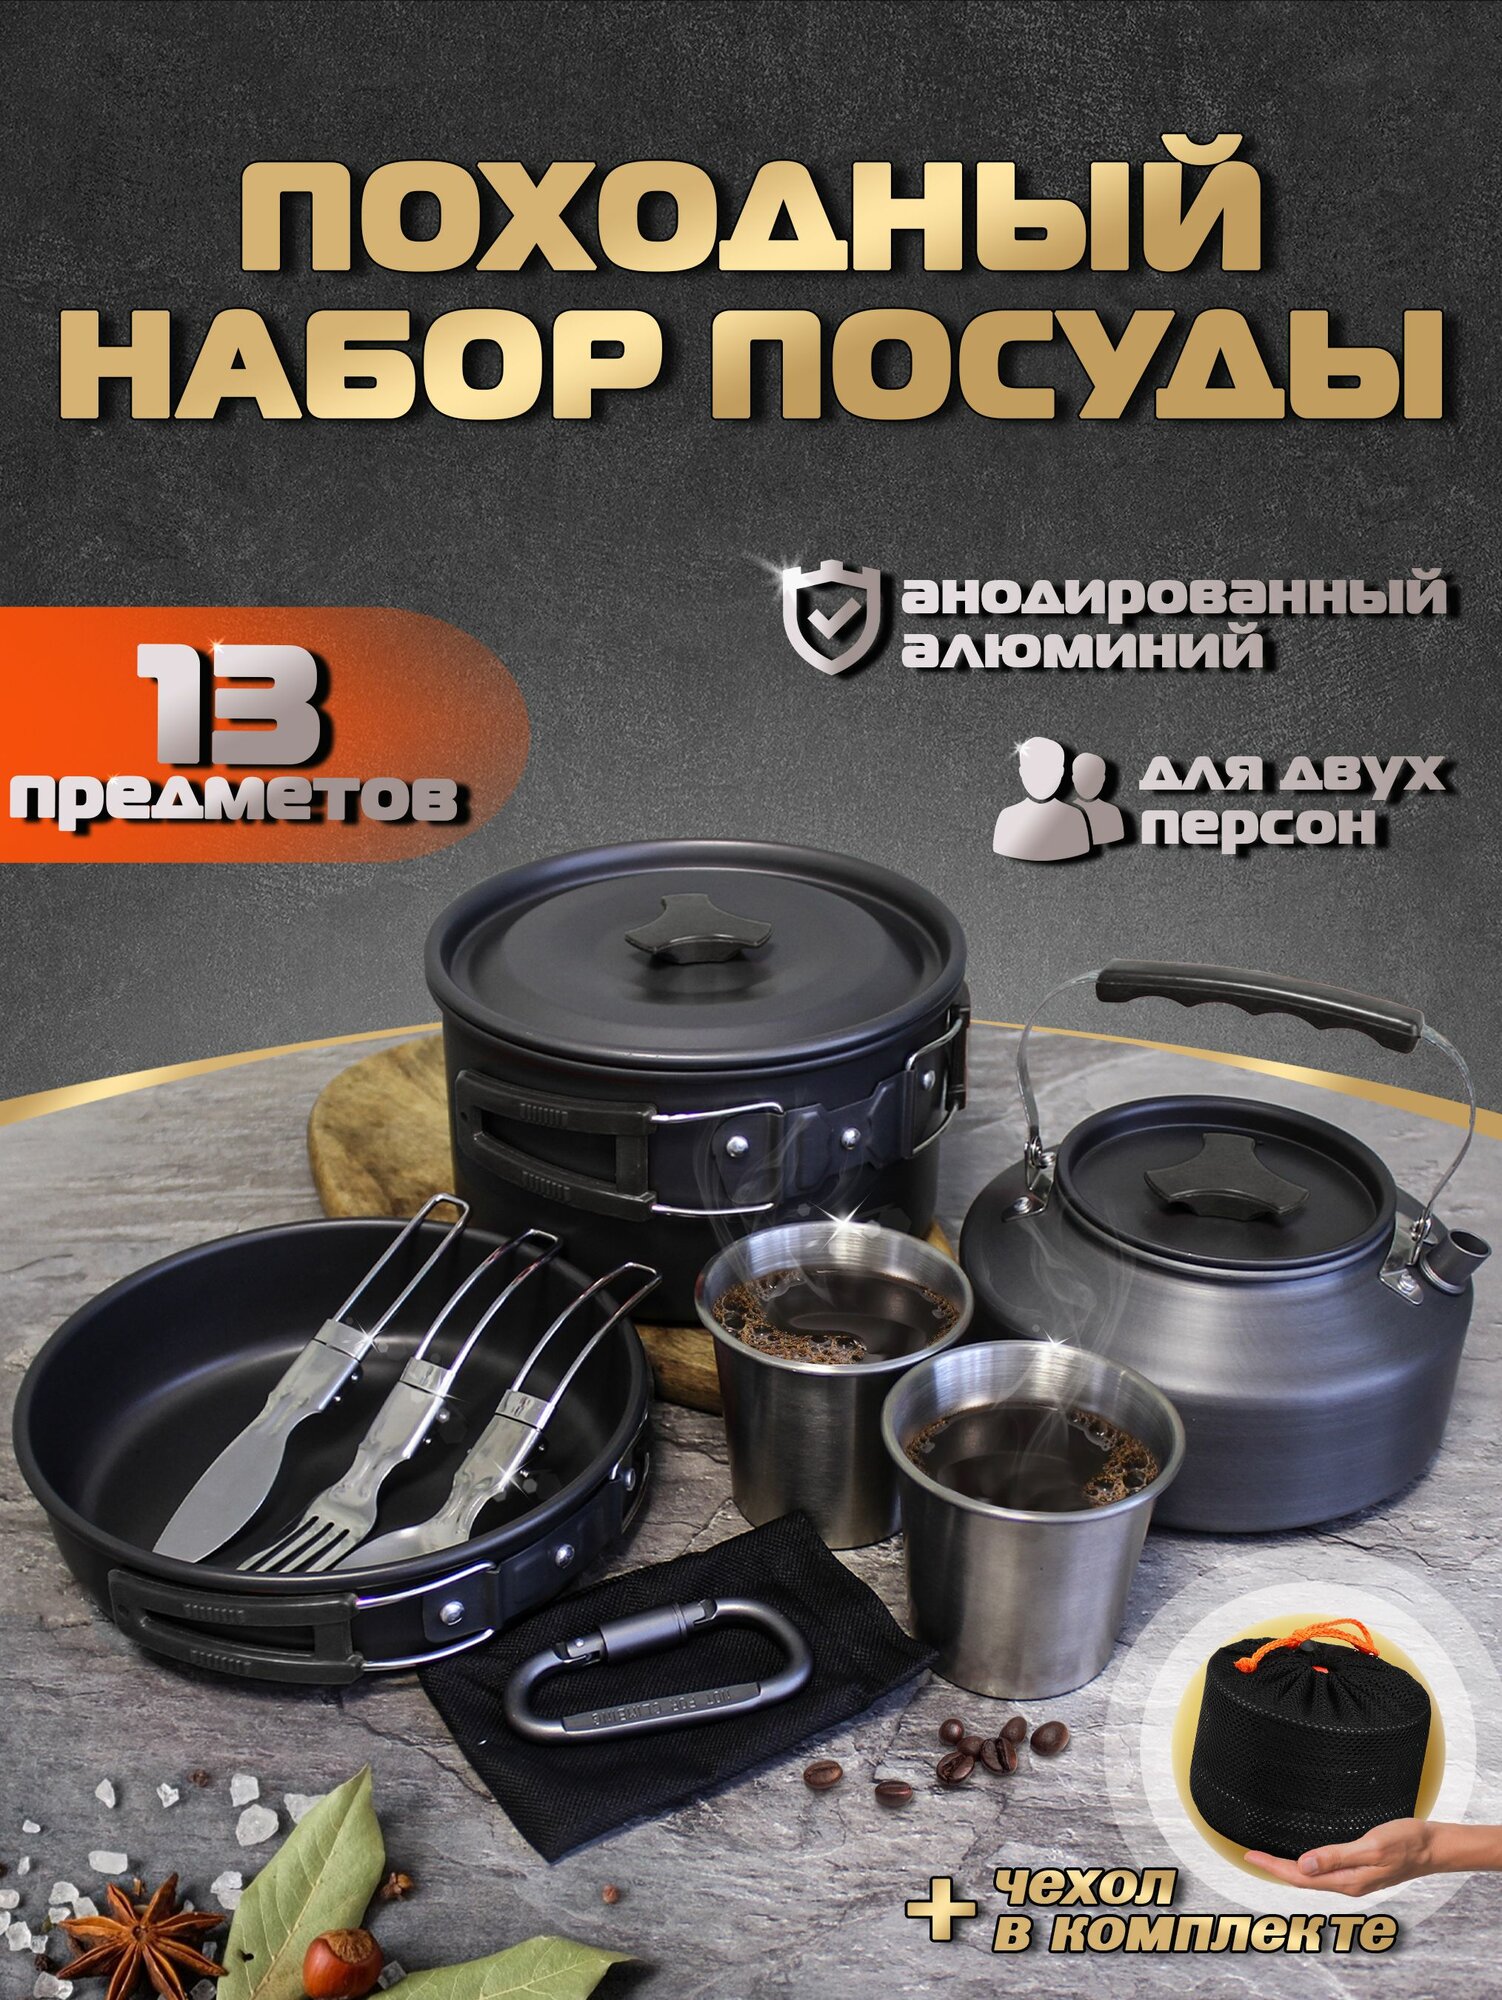 Набор посуды туристический для костра, похода HK-310 со столовыми приборами и стаканами в комплекте, Цвет: Чёрный